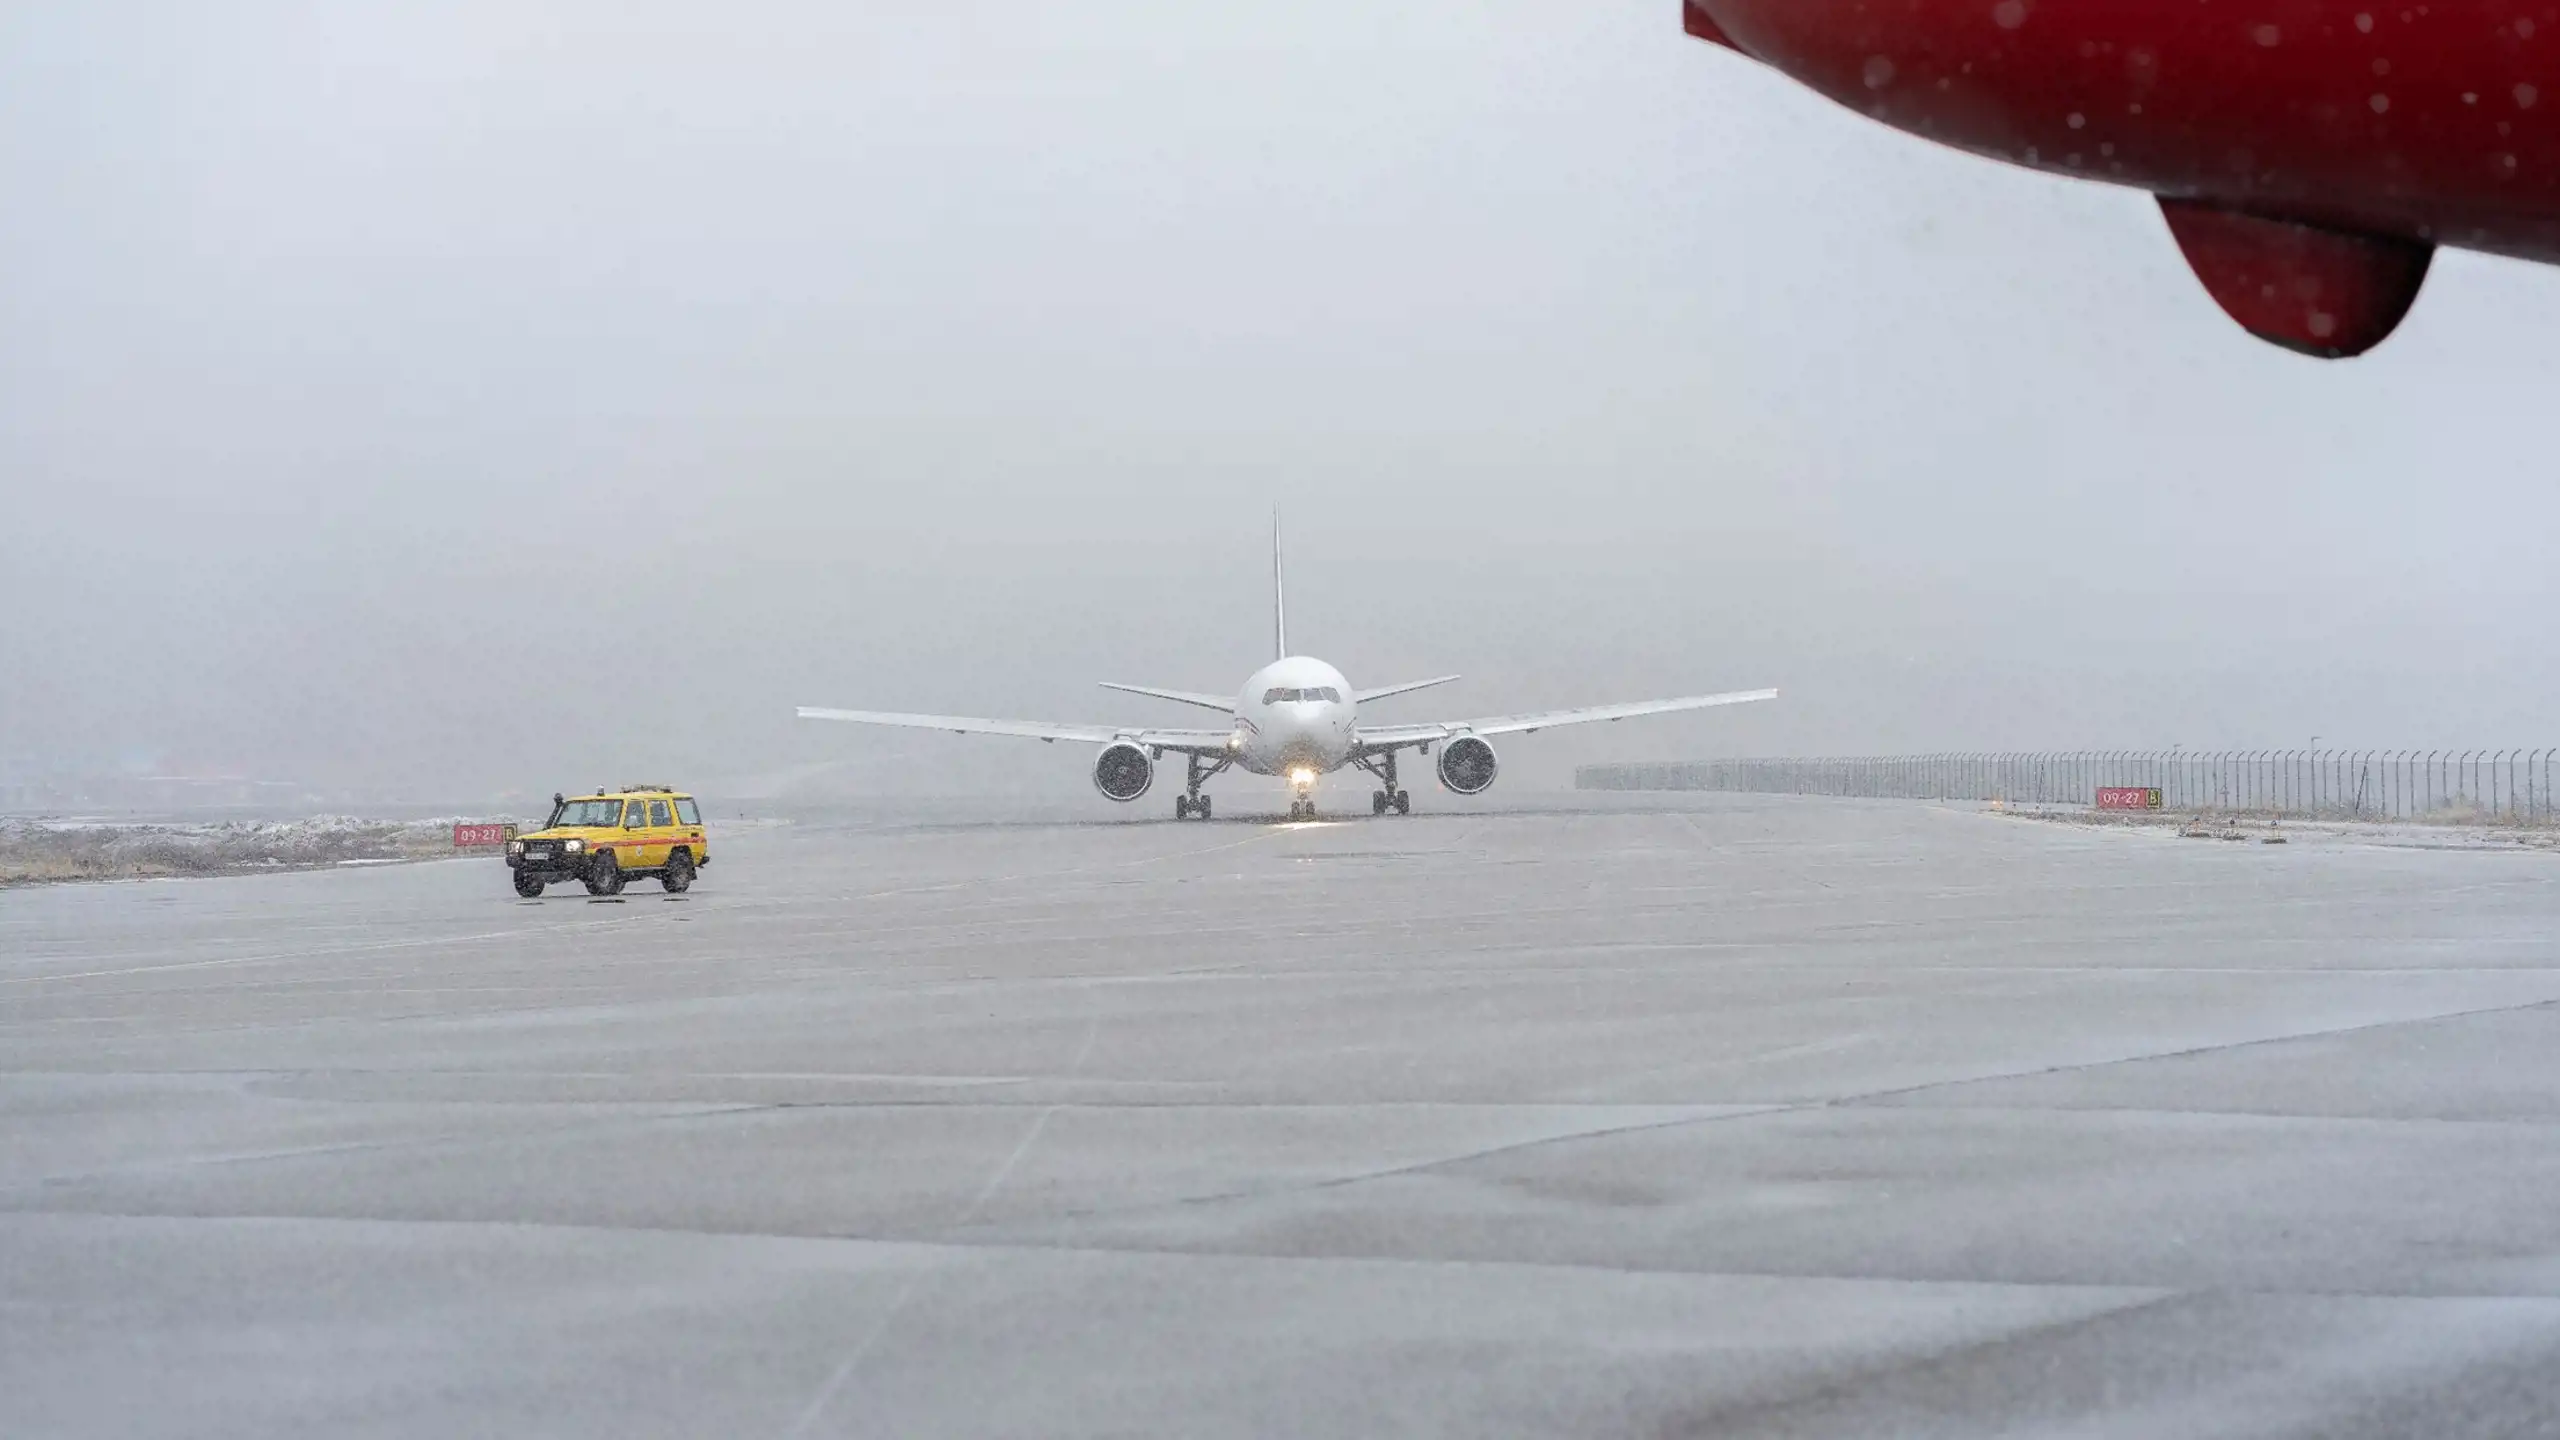 CargoJet lands in Kangerlussuaq